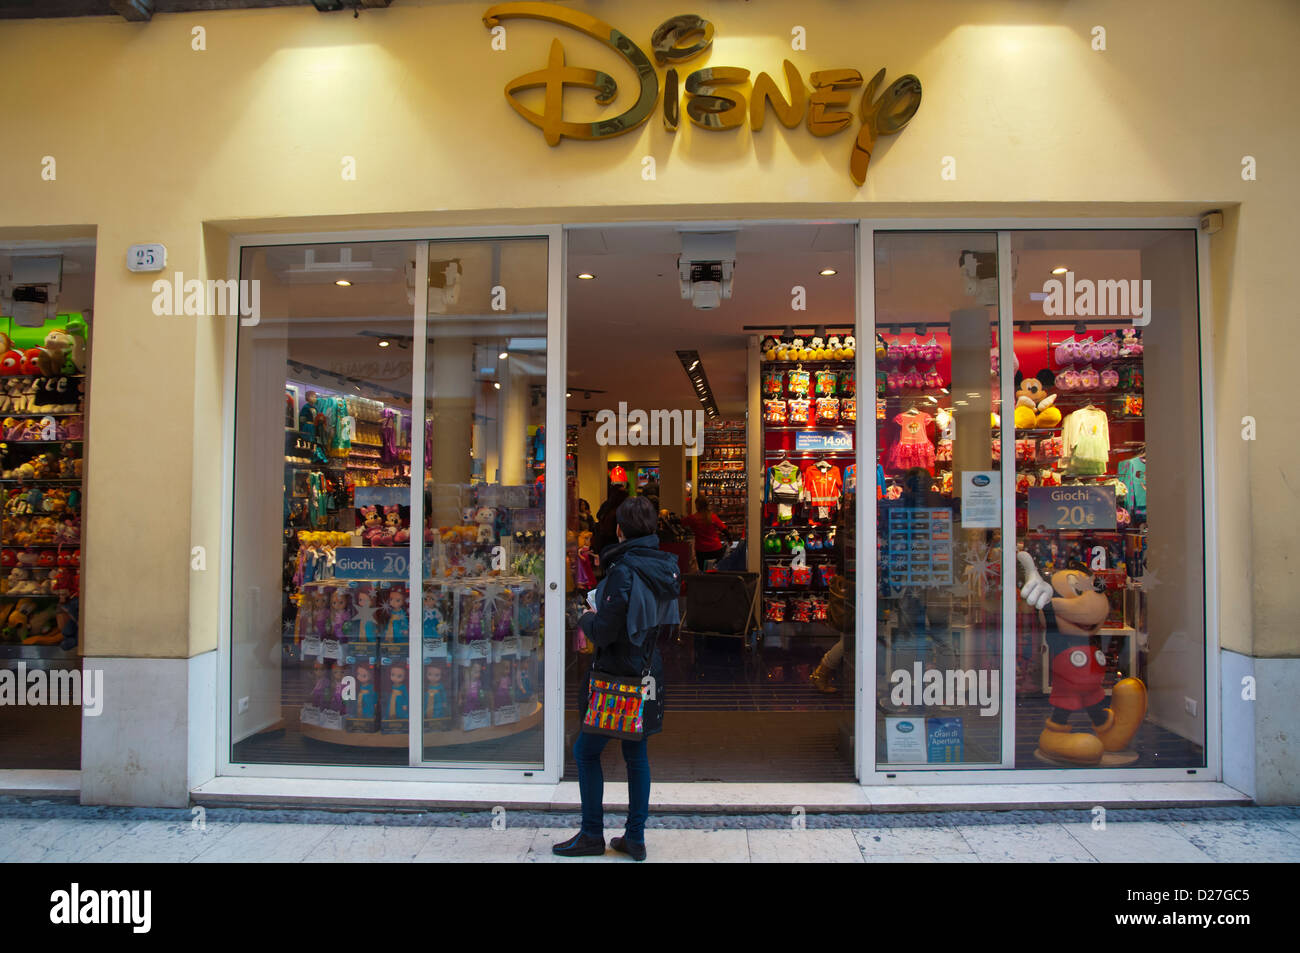 Disney store italy immagini e fotografie stock ad alta risoluzione - Alamy